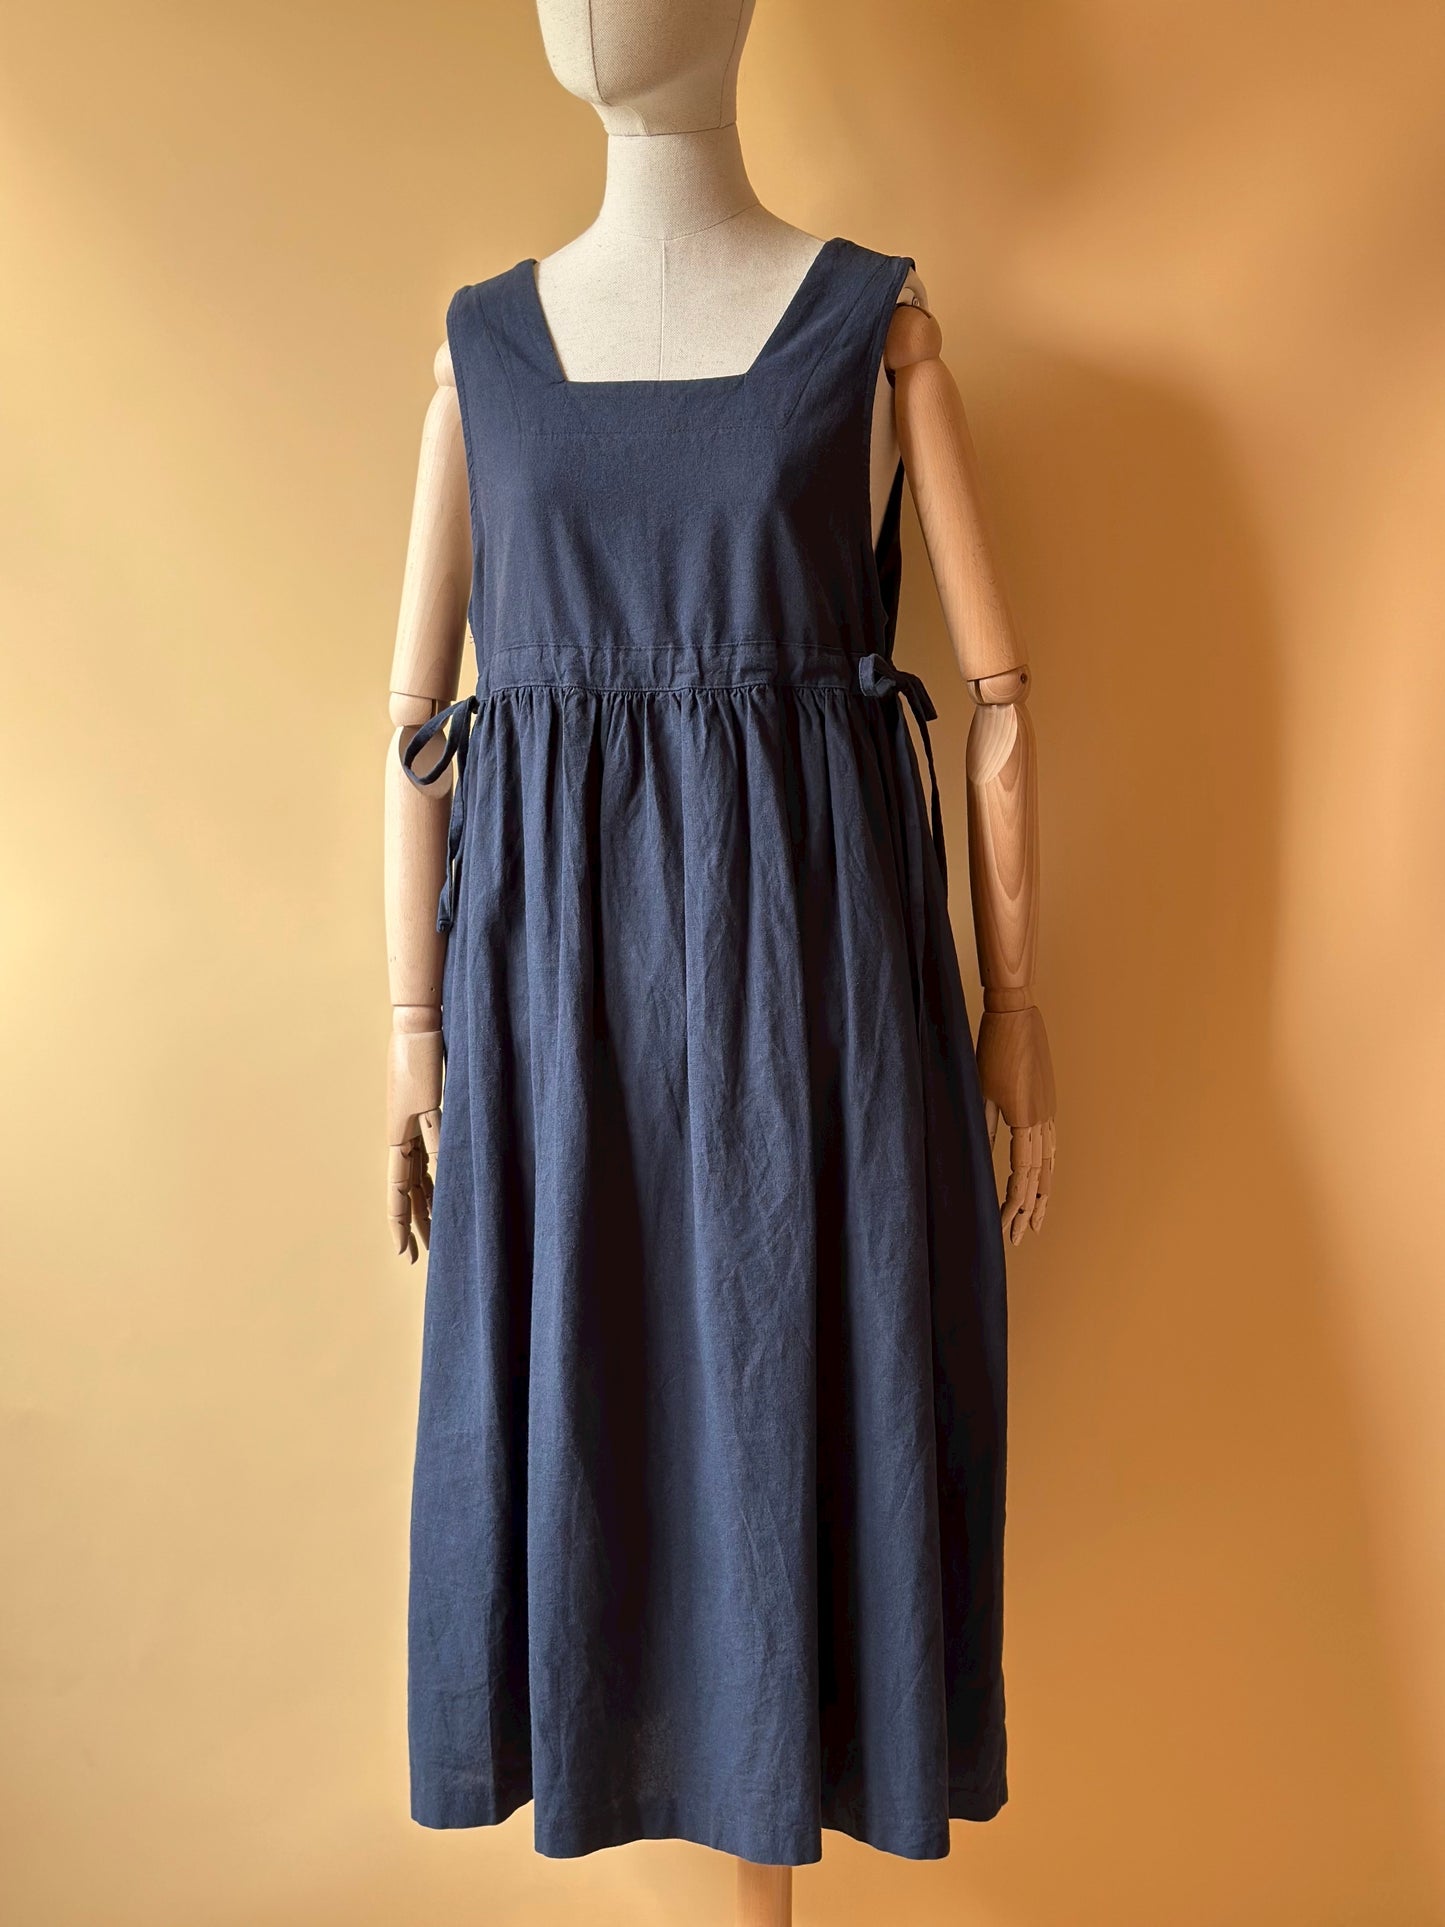 Sleeveless Navy Blue Cotton & Linen Dress